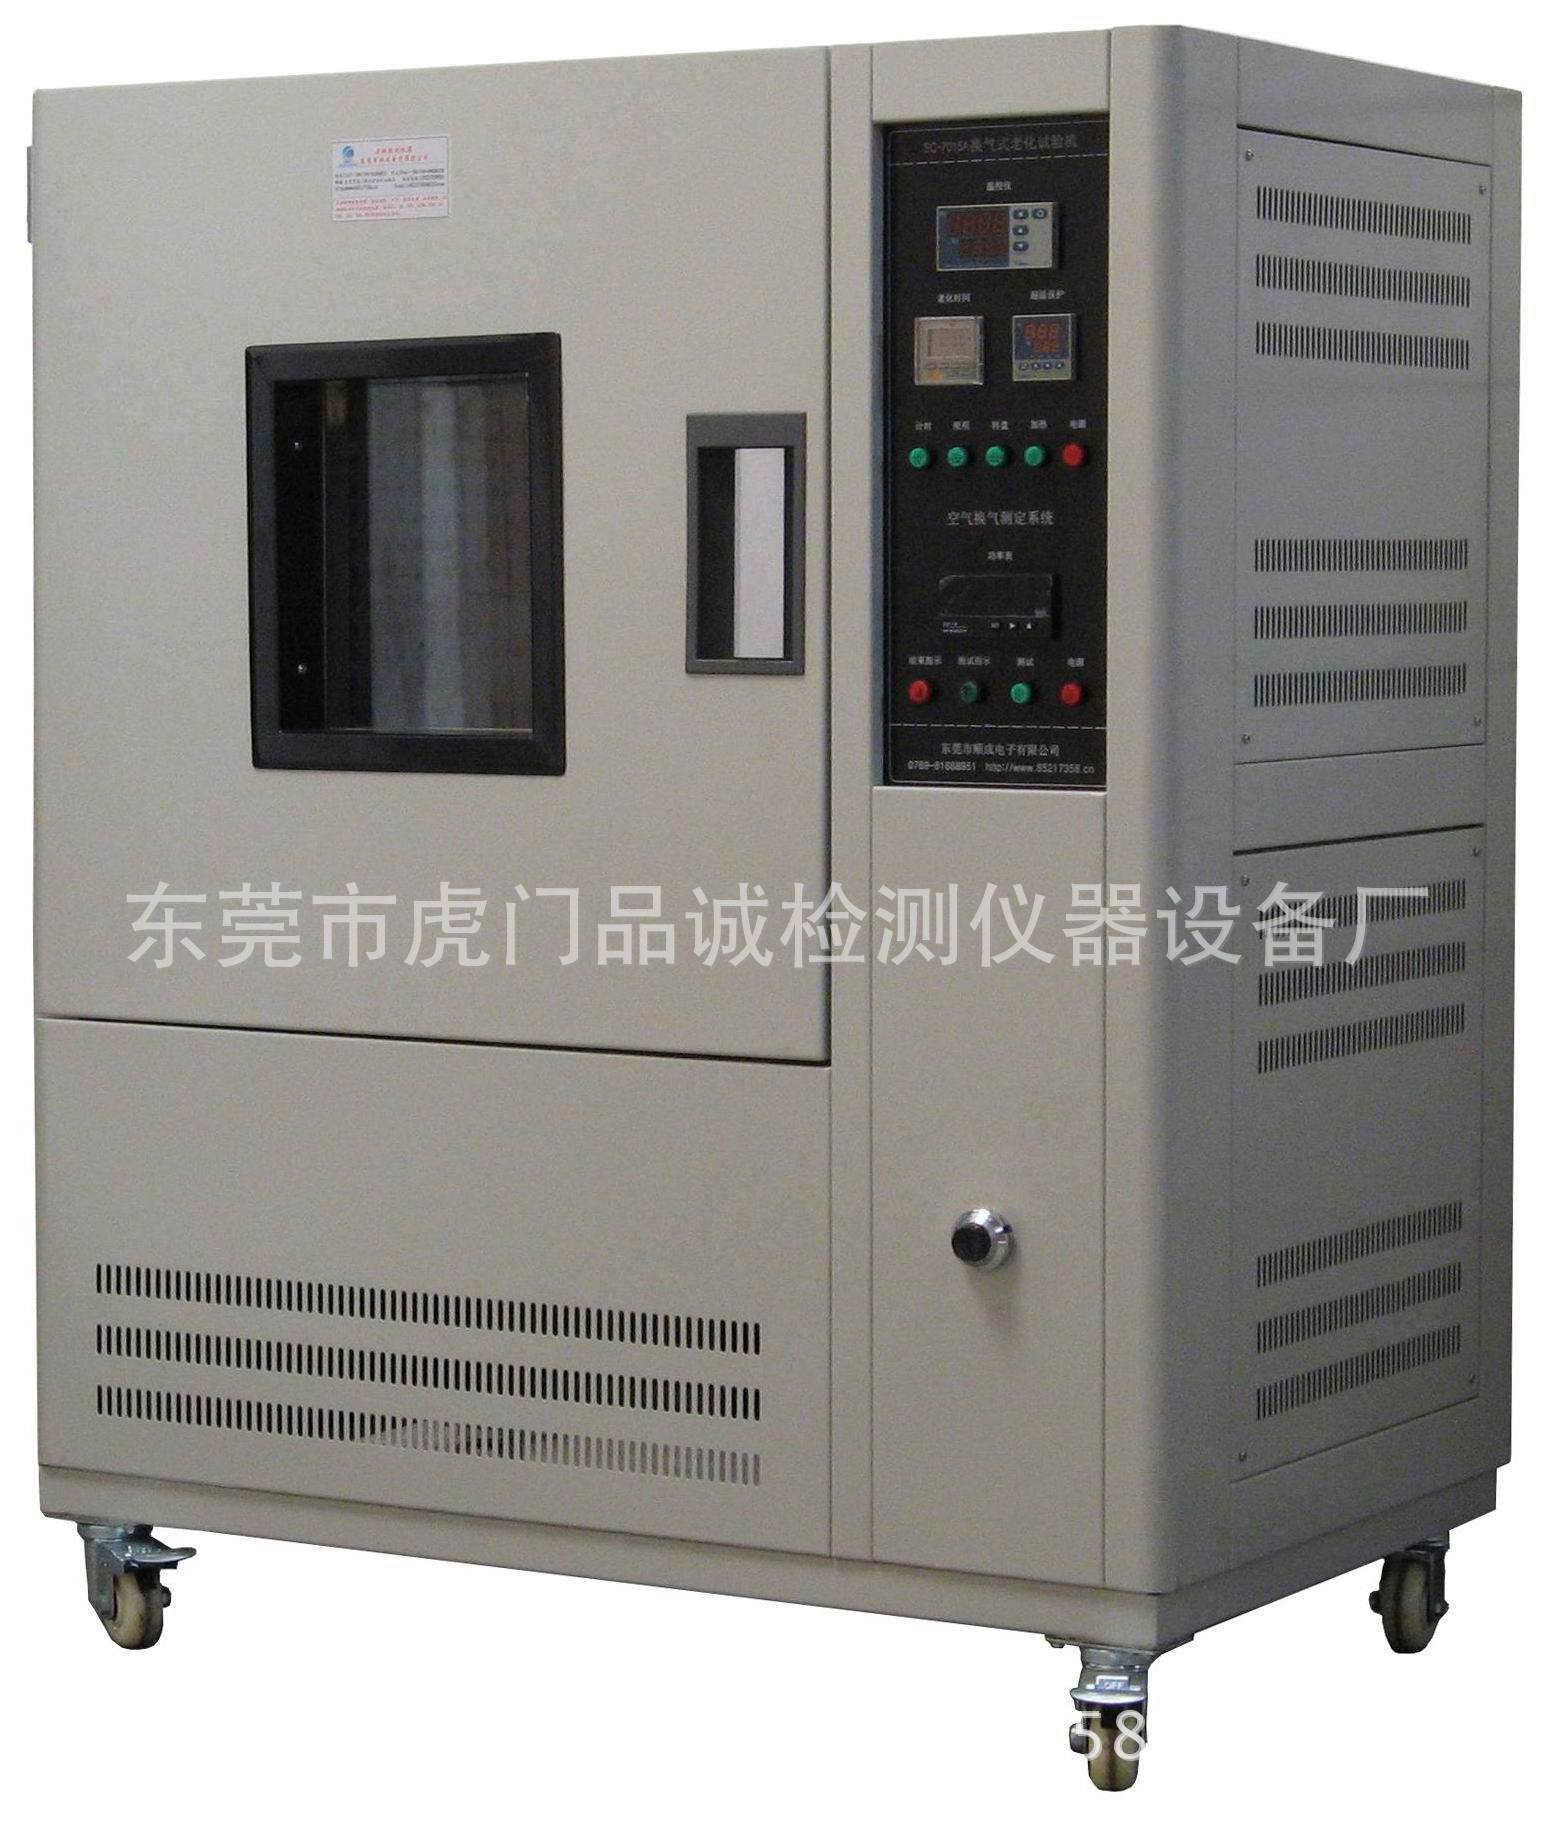 换气式老化试验机SC-7015A   强制通风老化箱生产厂家示例图6